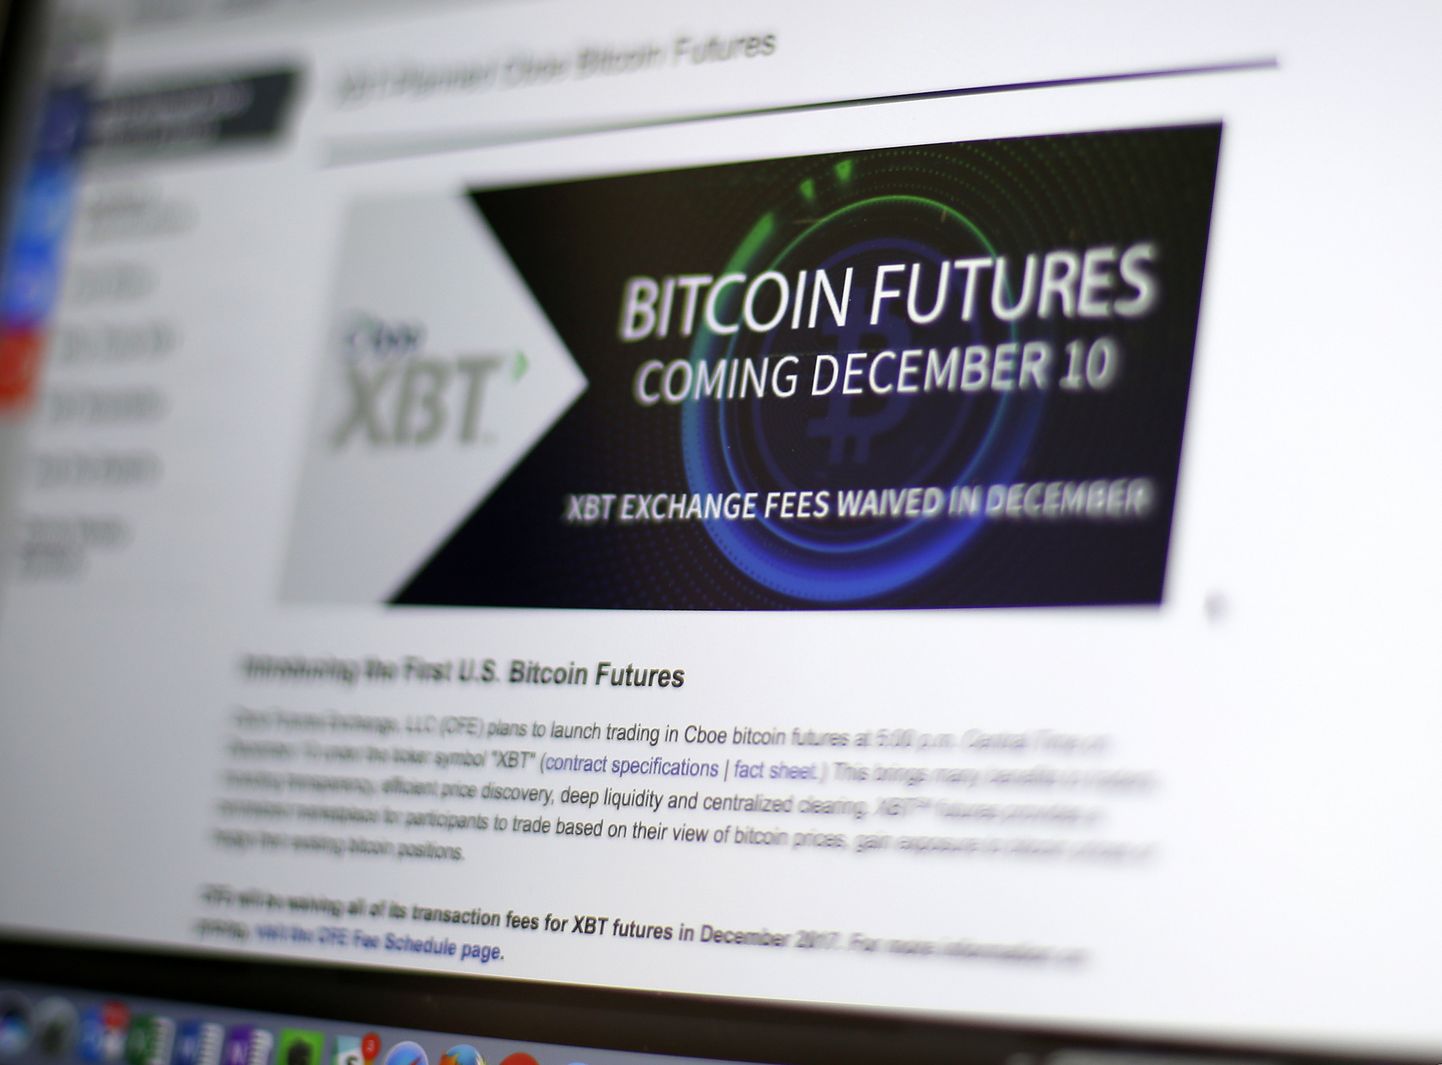 Chicago Board Options Exchange'i veebileht näitas reedel, et bitcoinide futuuridega hakatakse kauplema 10. detsembril.